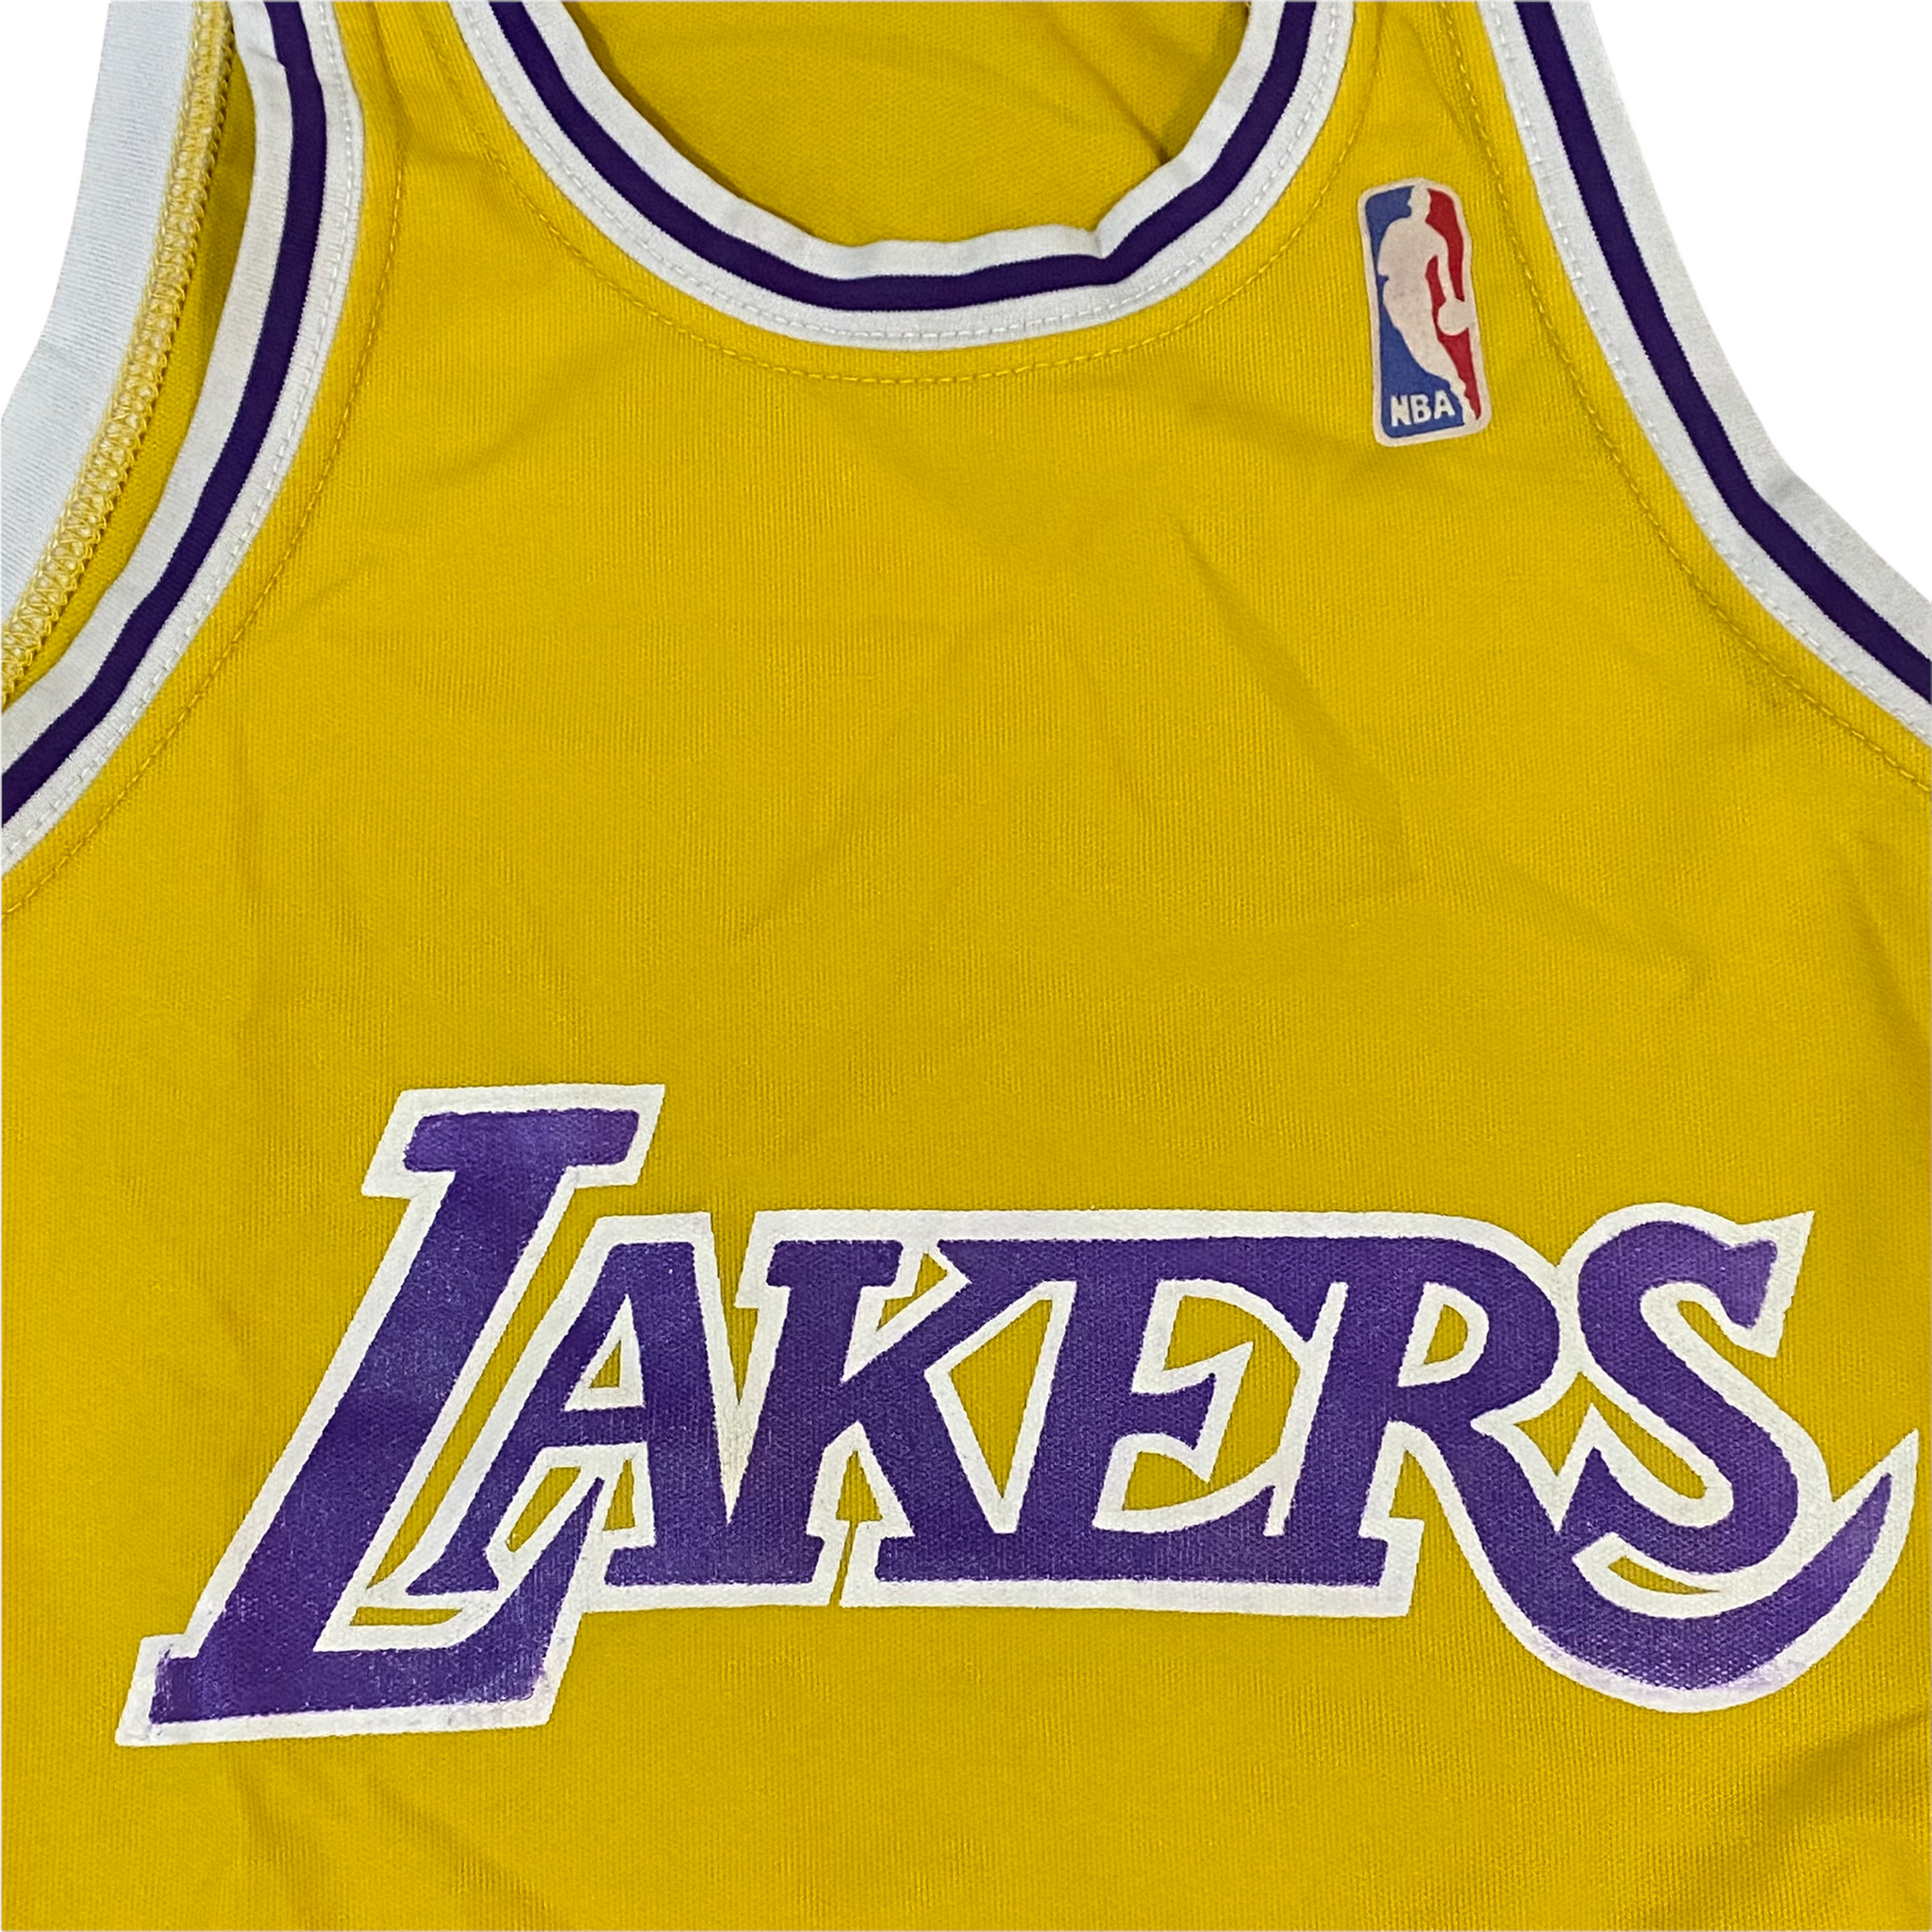 Lakers Jerseys for sale in McDaniels, Kentucky